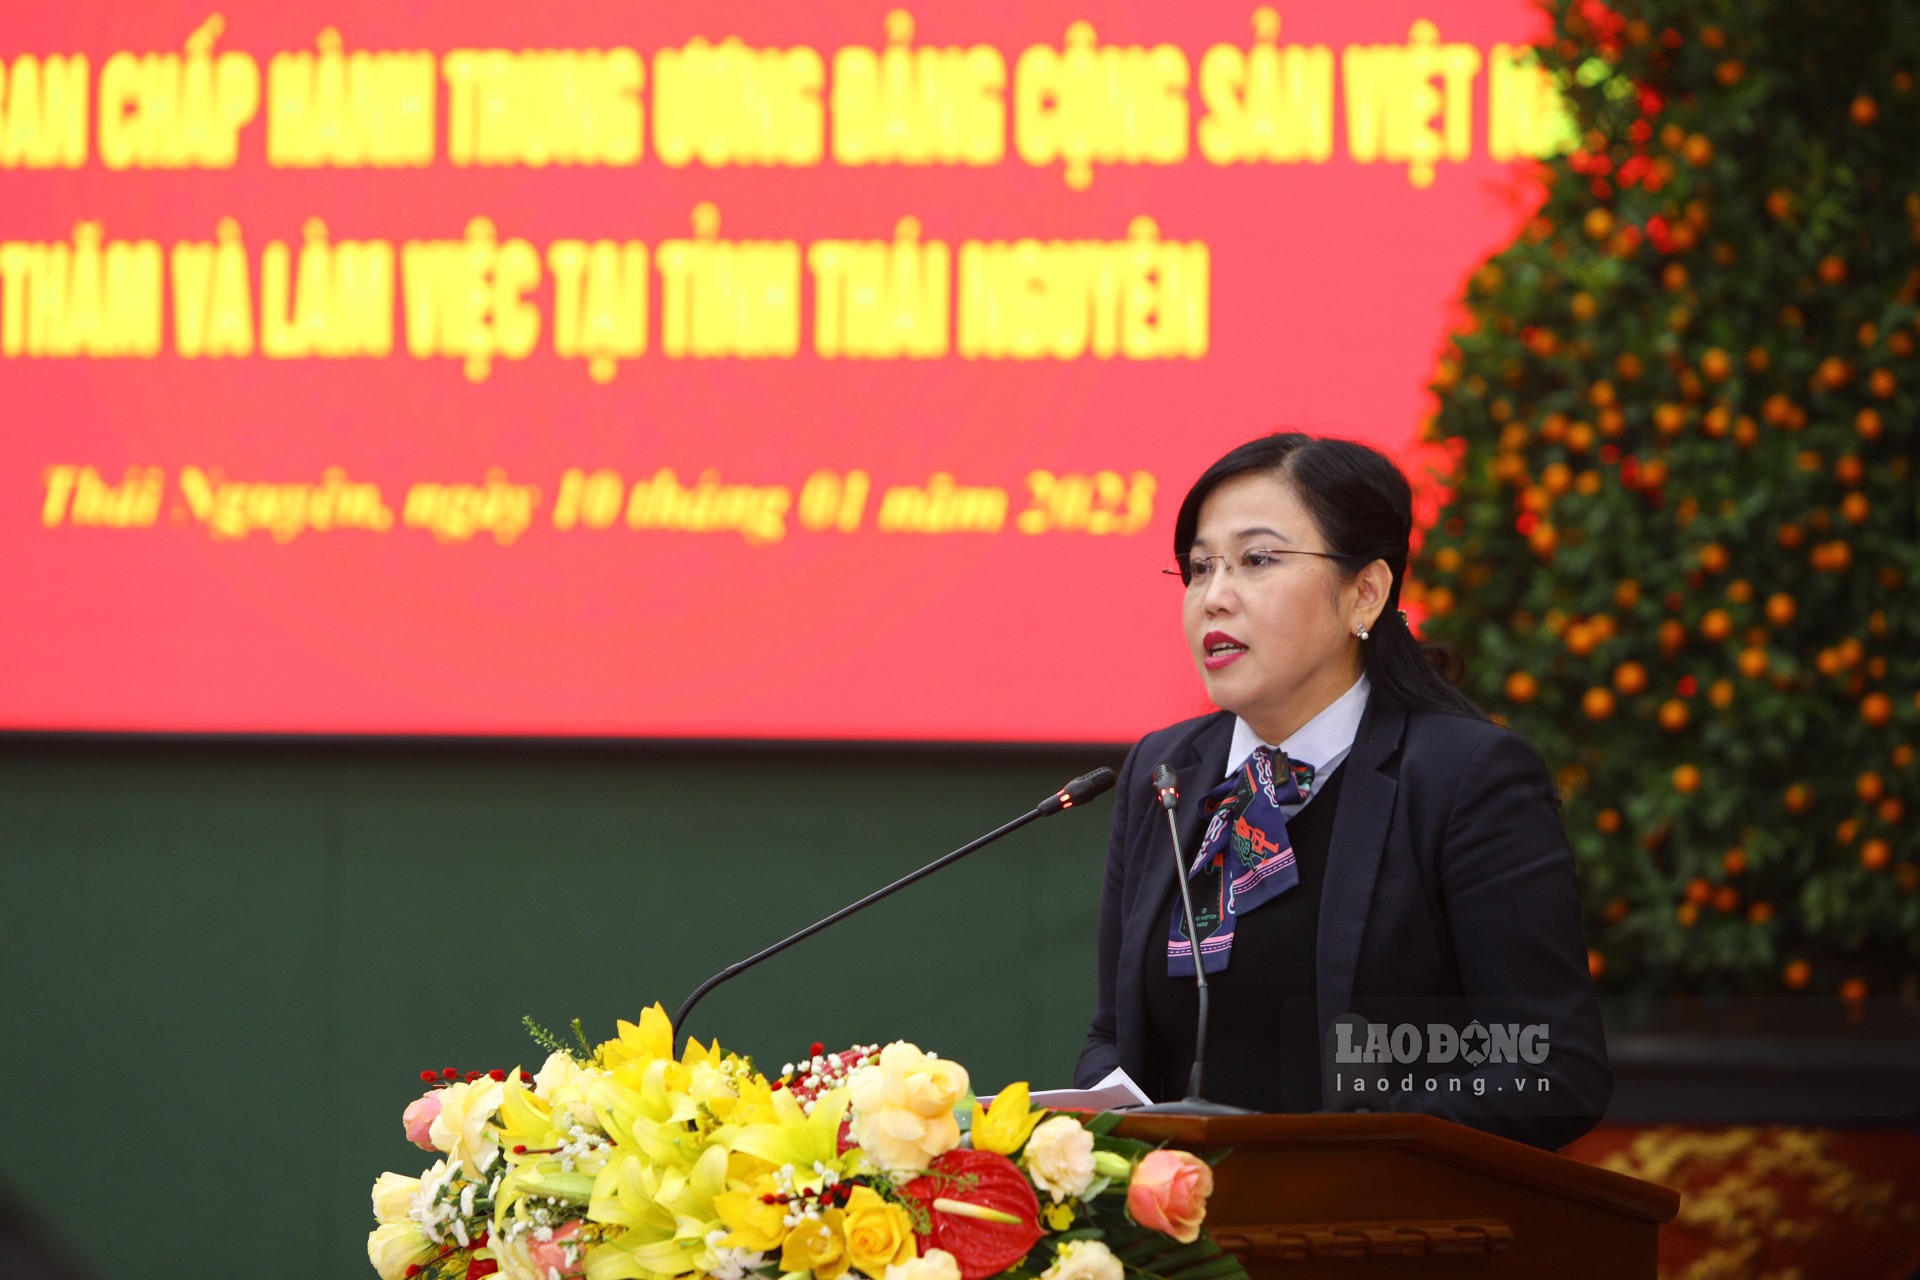 Đồng chí Nguyễn Thanh Hải - Bí thư Tỉnh uỷ Thái Nguyên báo cáo tại buổi làm việc.